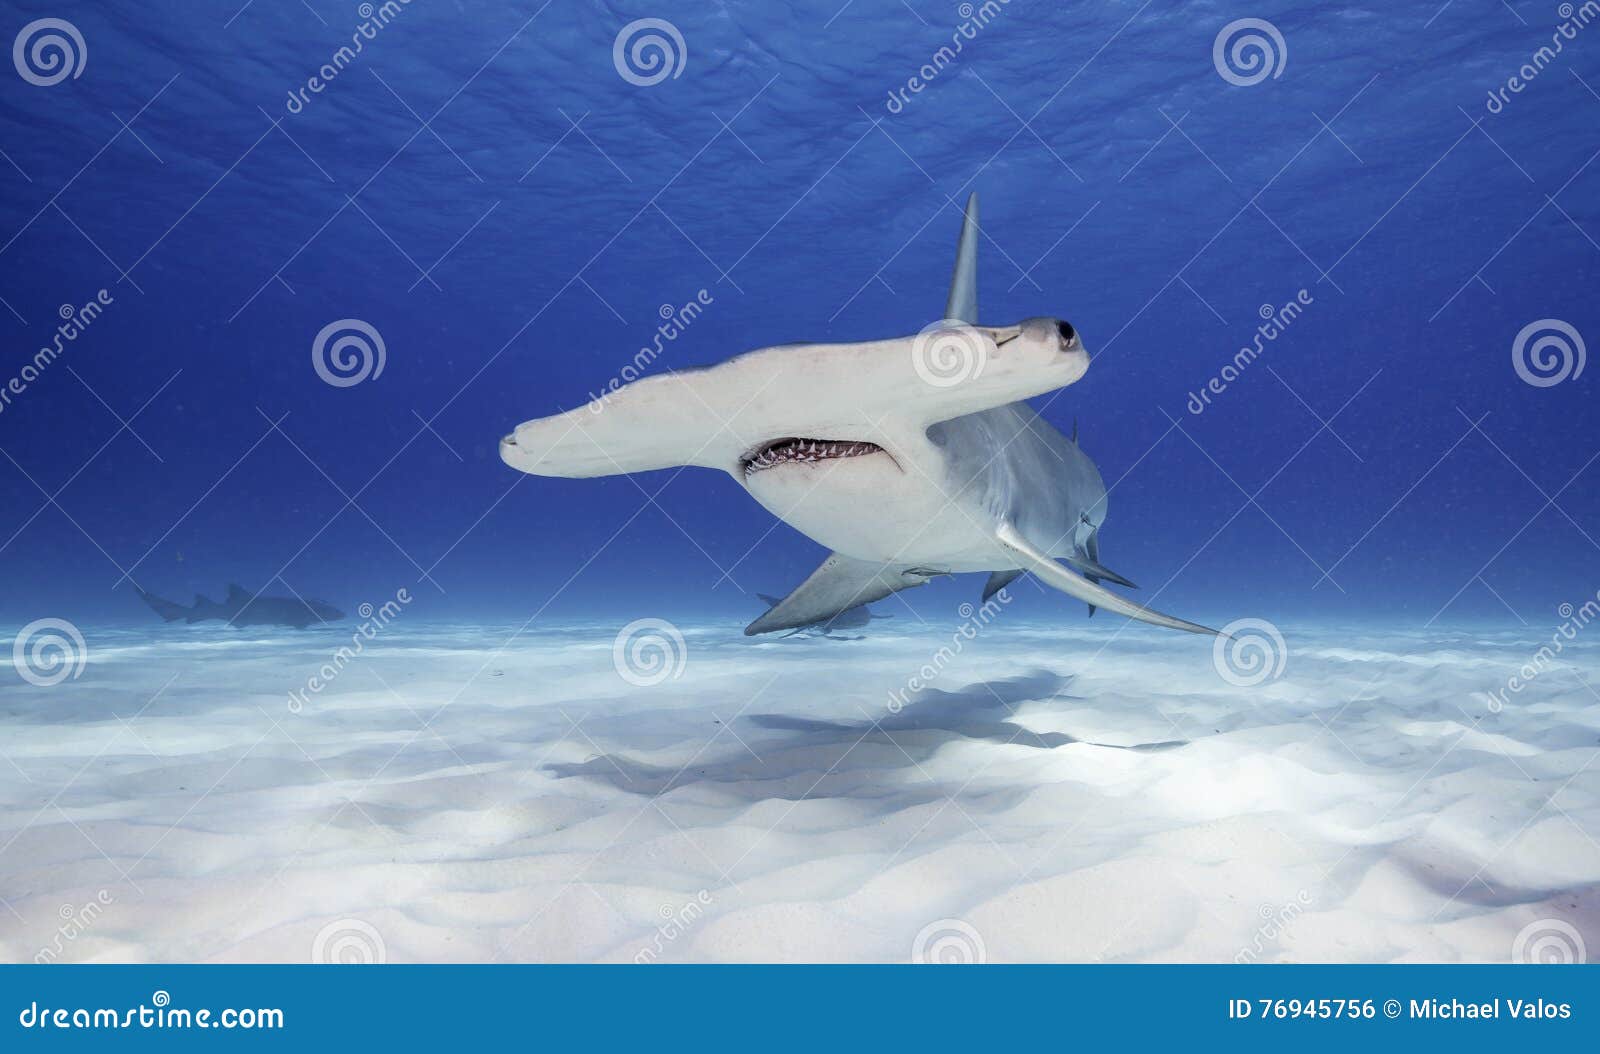 伟大的双髻鲨 库存图片. 图片 包括有 瓶颈, 巨浪, 极大, 空白, 游泳, 杏仁, 视图, 双髻鲛, 水下 - 76716585